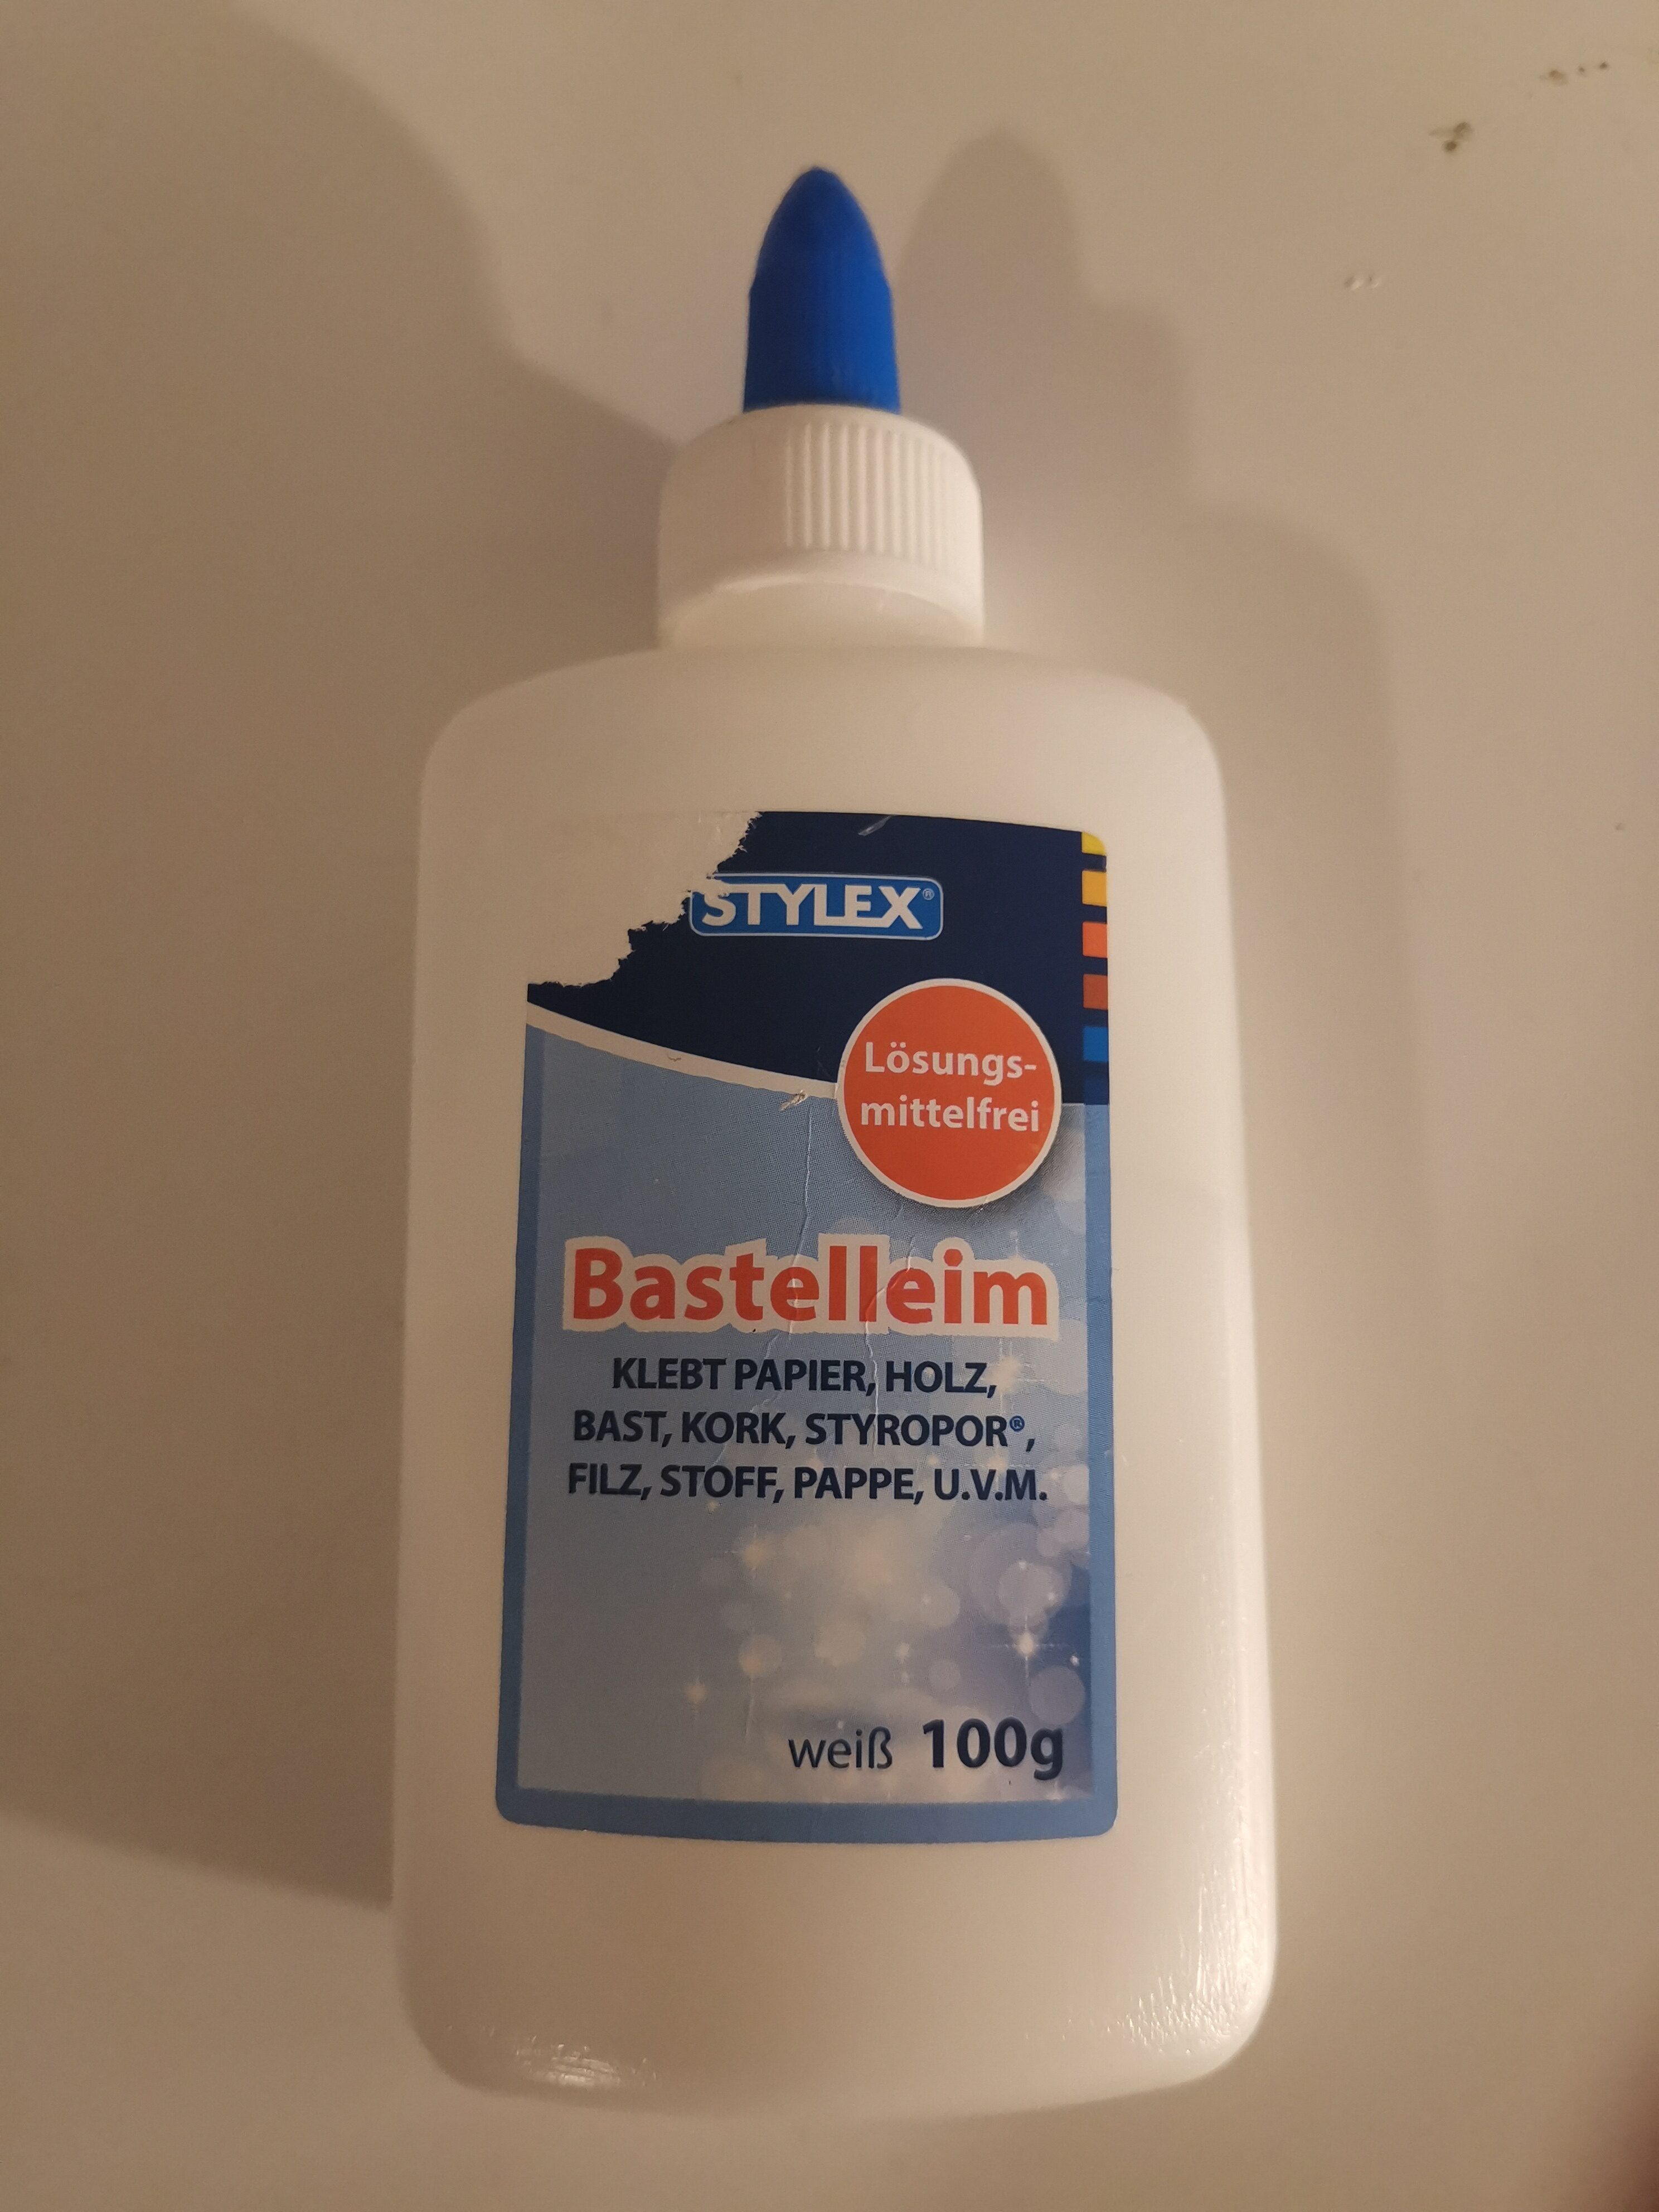 Stylex Bastelleim - Produkt